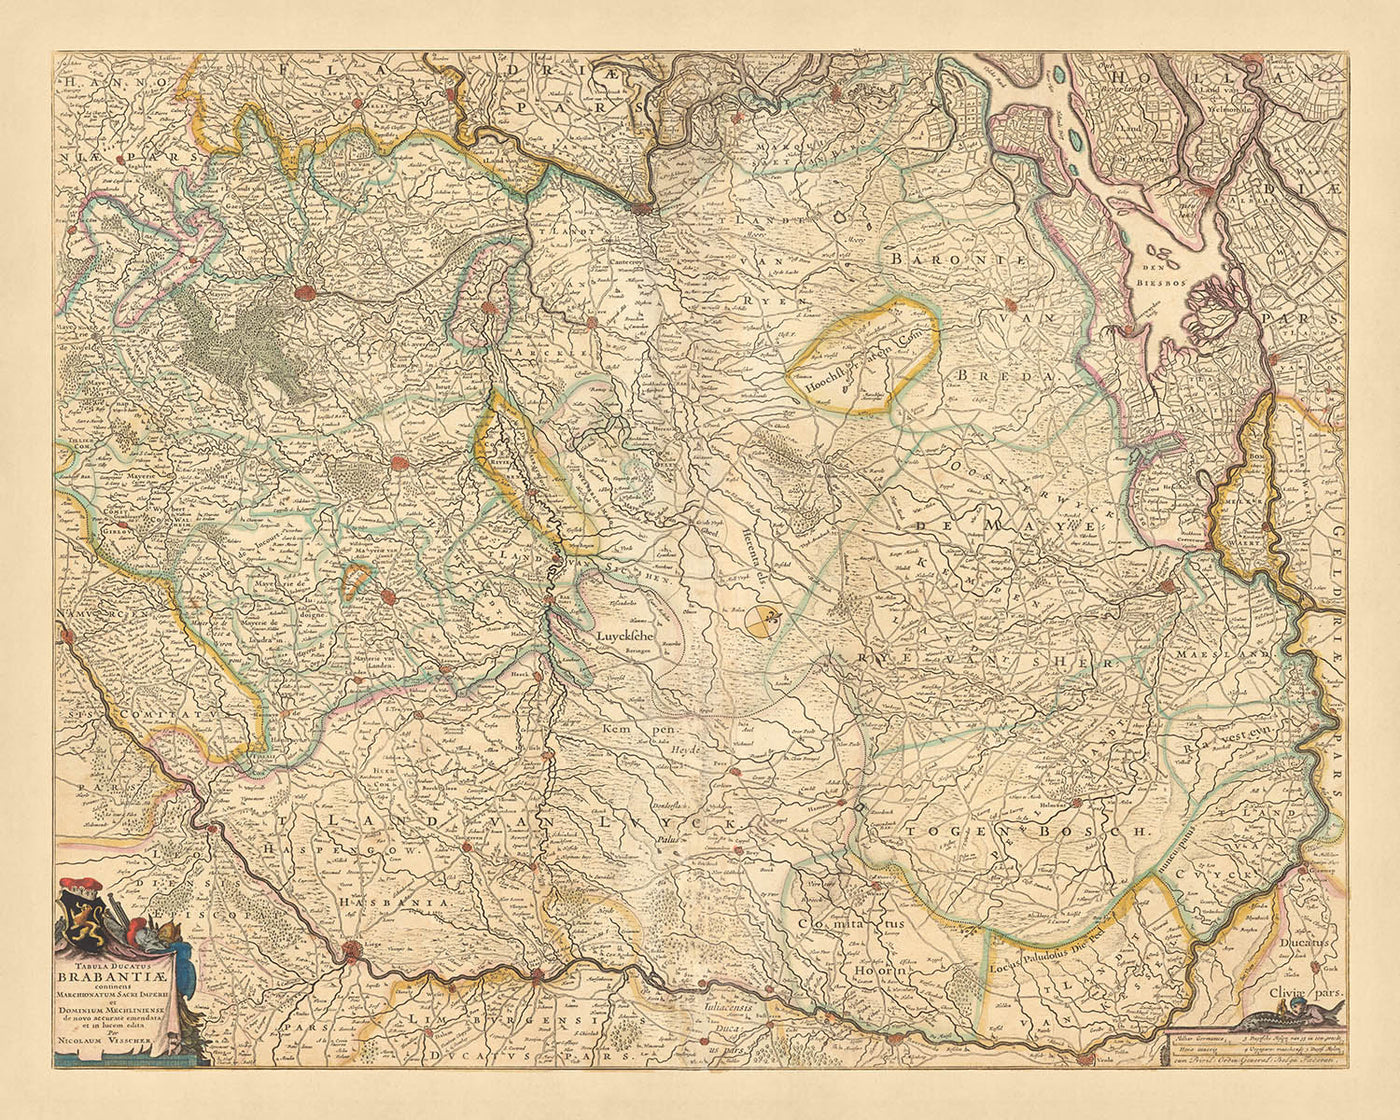 Ancienne carte du duché de Brabant par Visscher, 1690 : Bruxelles, Anvers, Liège, Eindhoven, Parc national de la Haute Campine